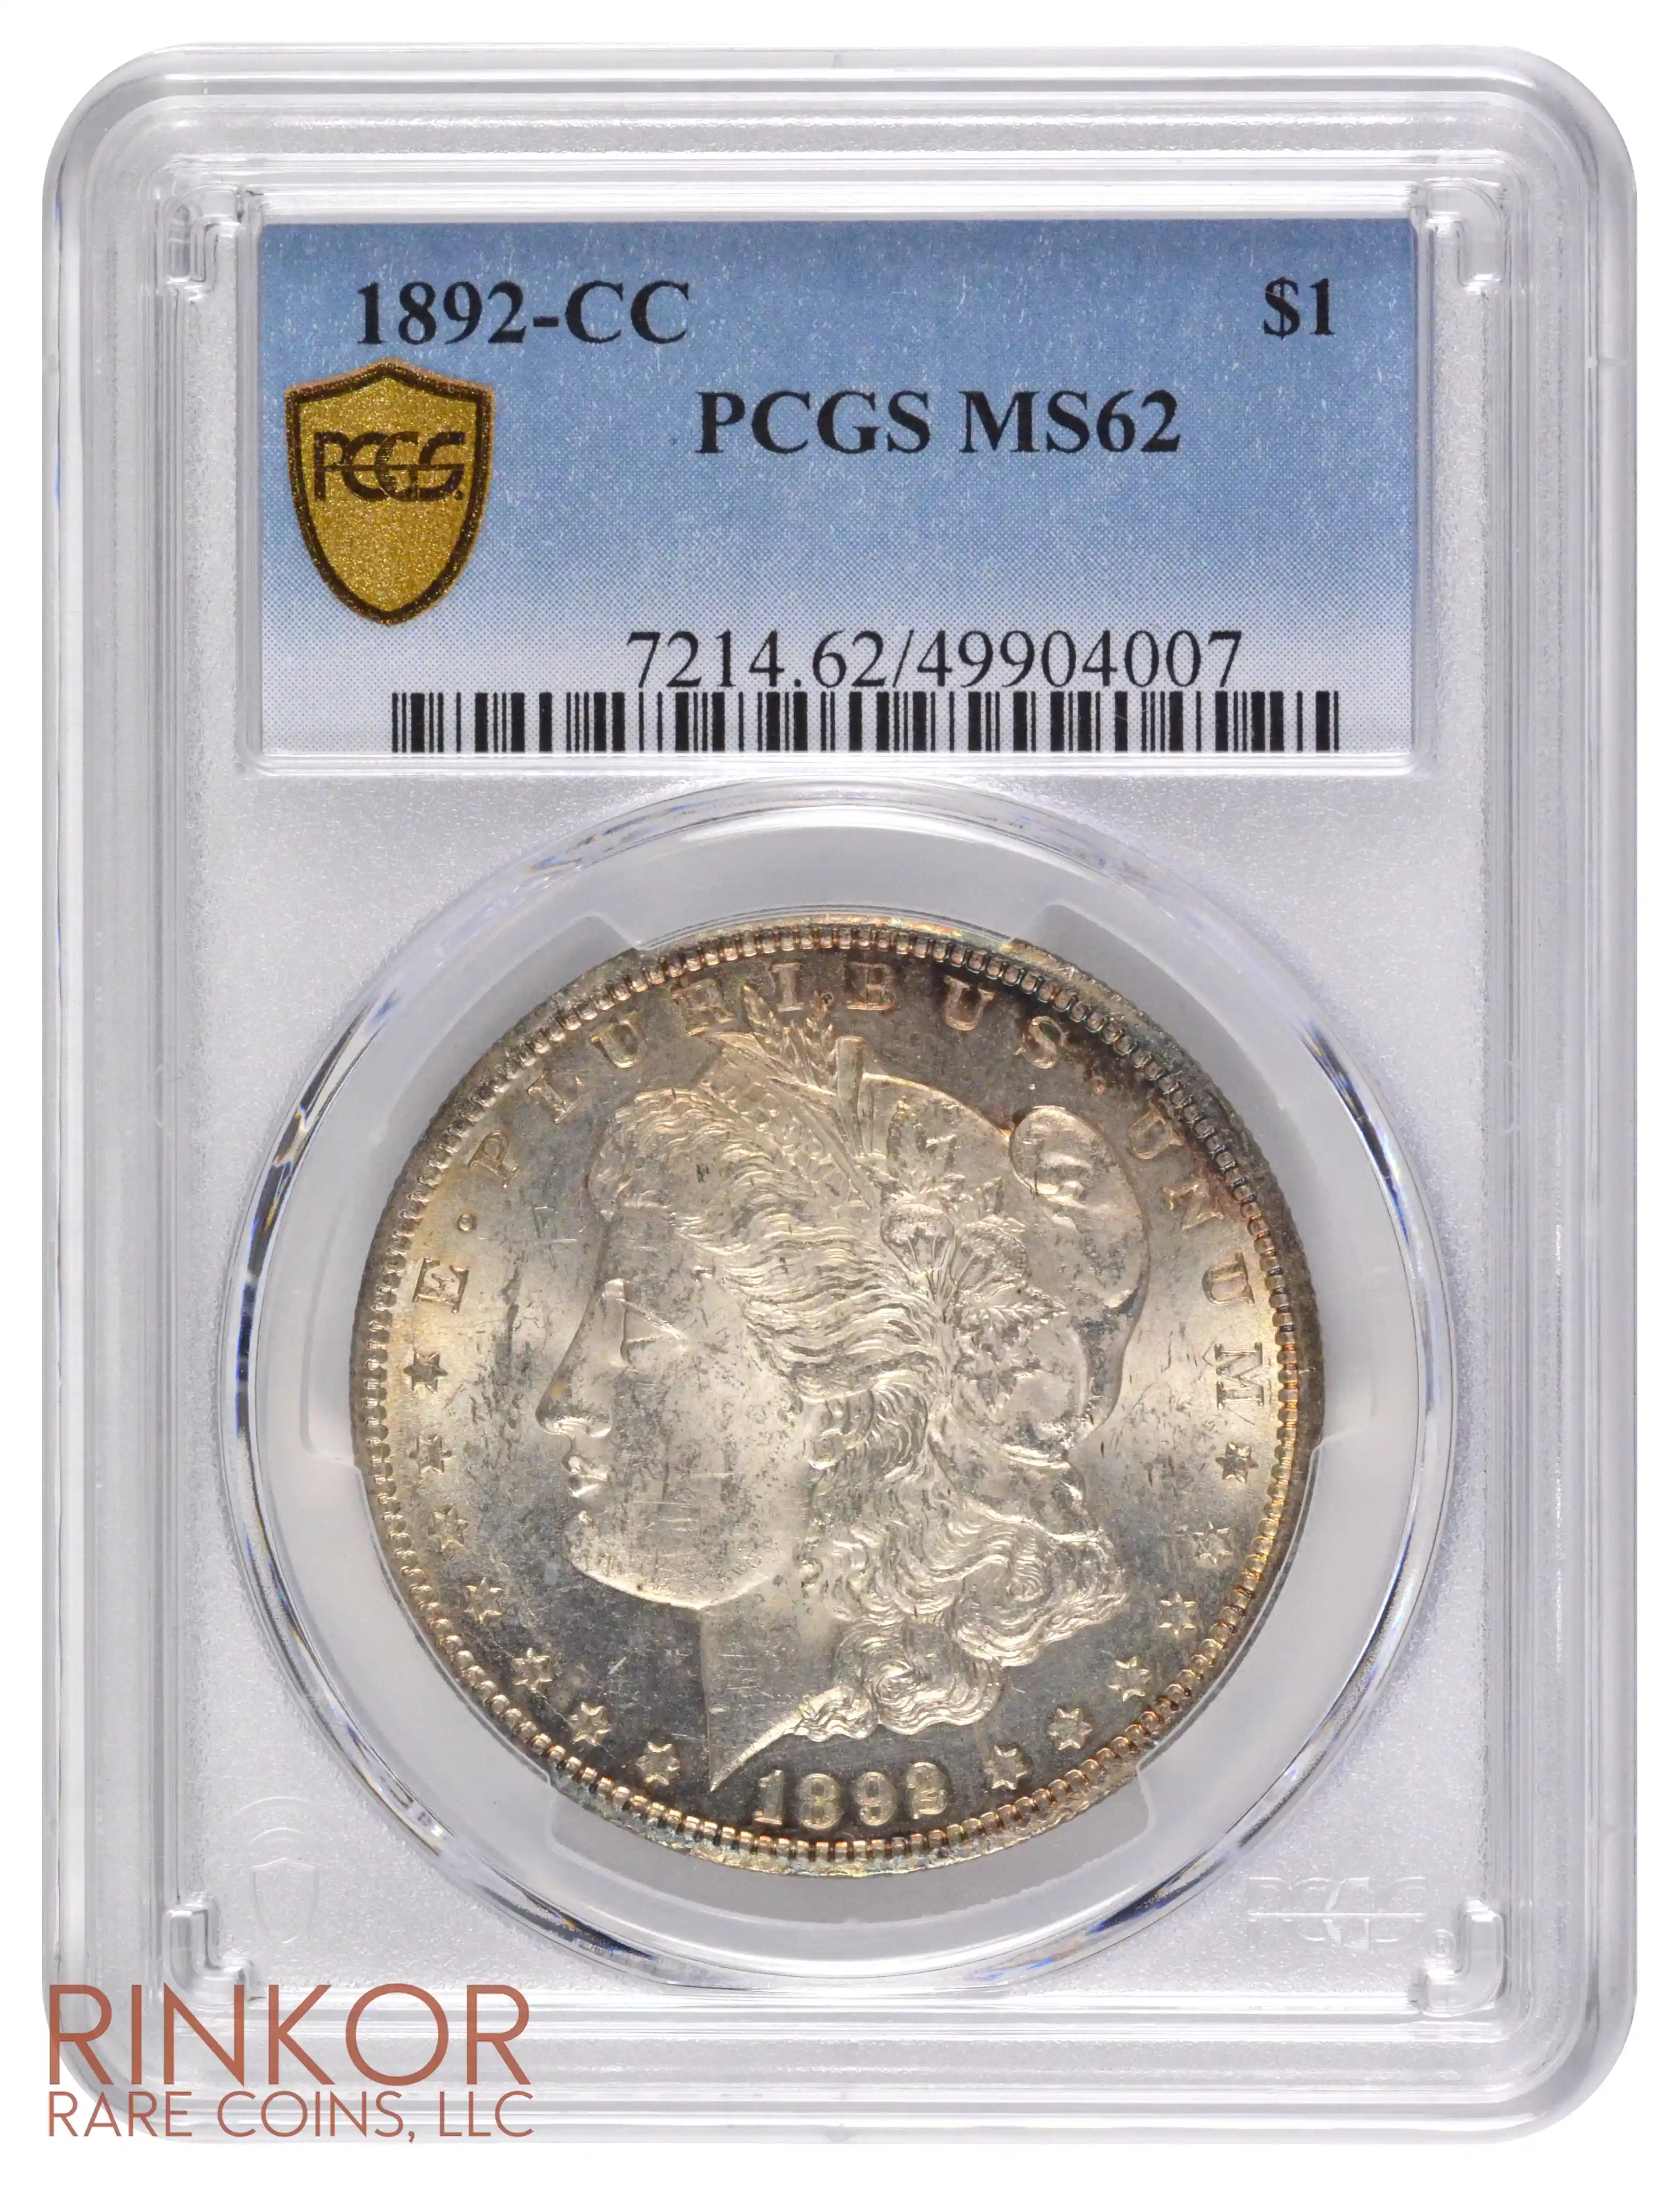 1892-CC $1 PCGS MS 62